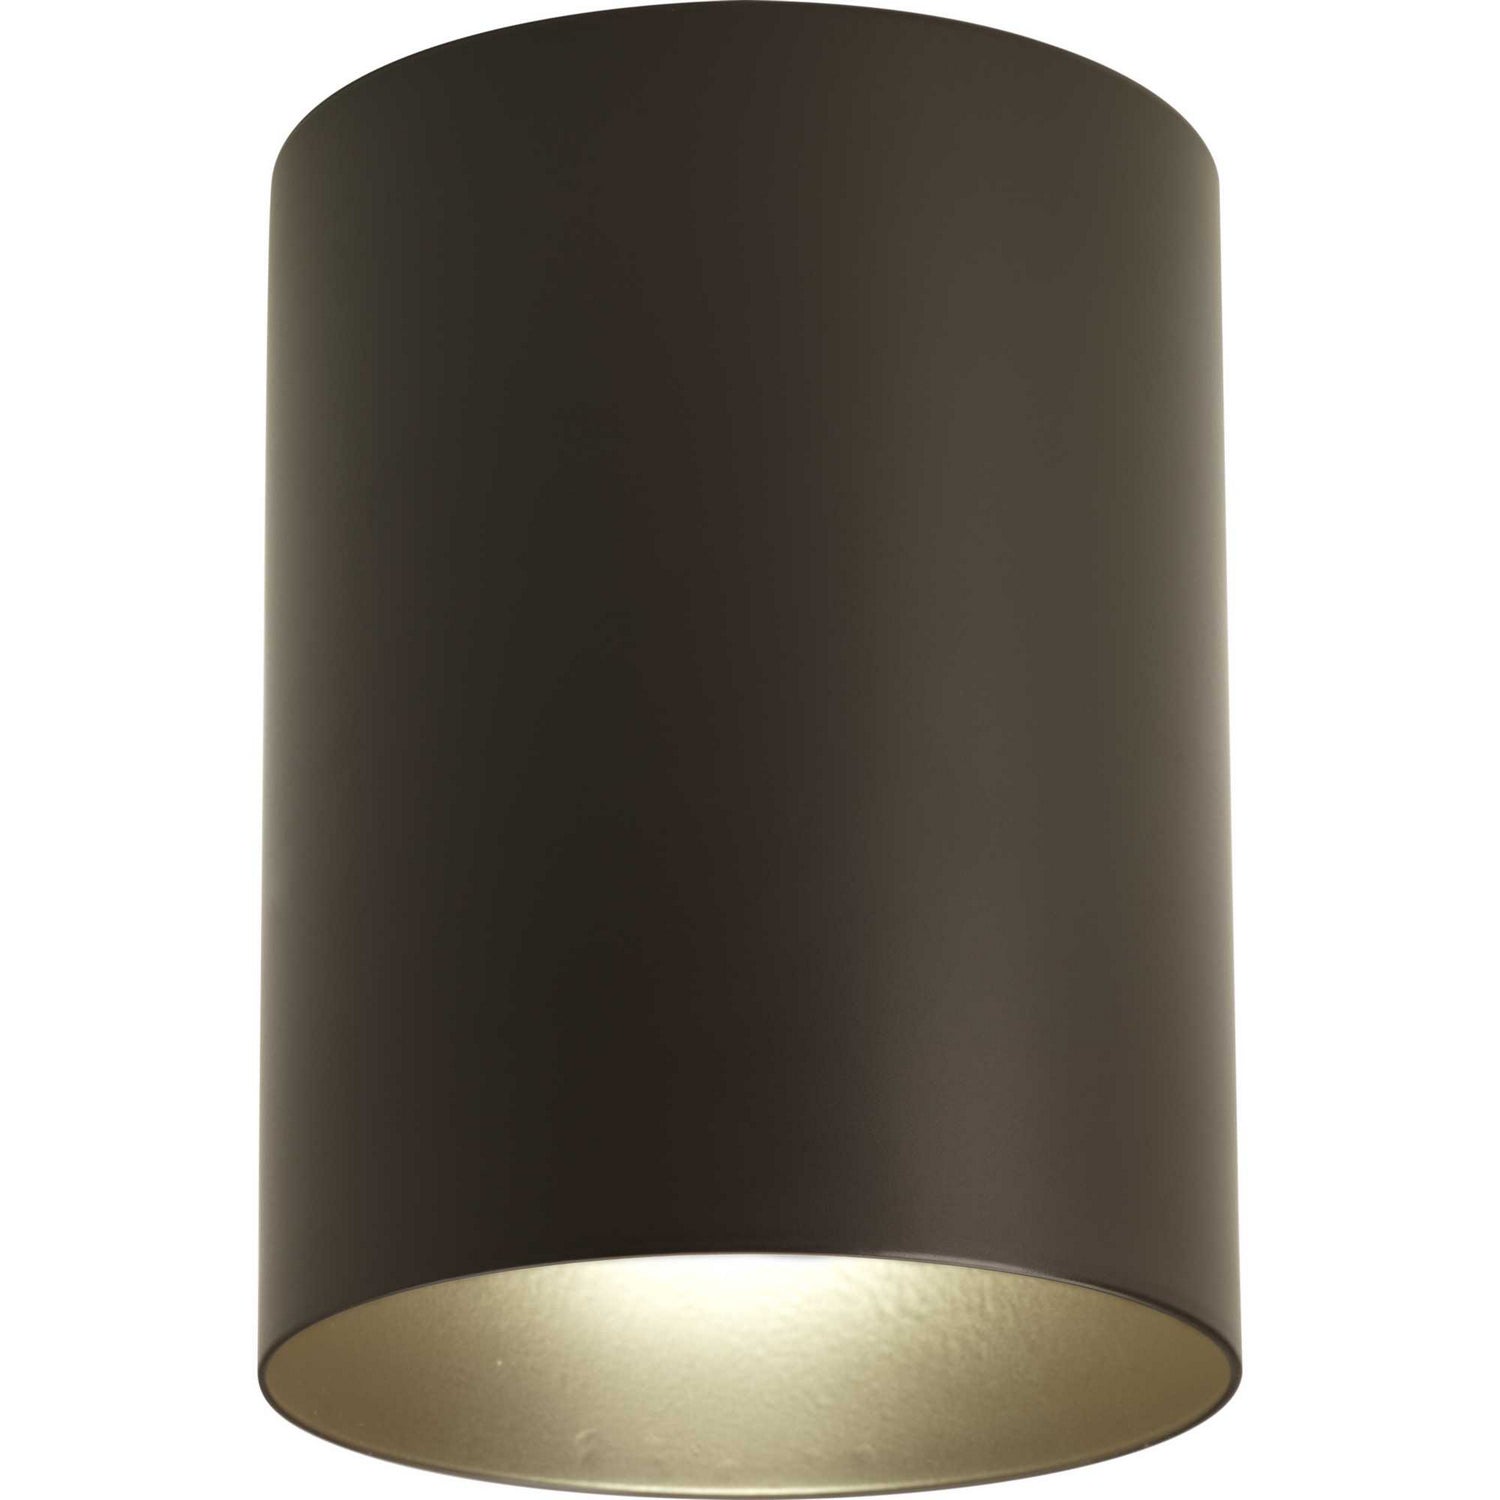 Progress Canada - LED Cylinder - LED Cylinders - Antique Bronze- Union Lighting Luminaires Decor